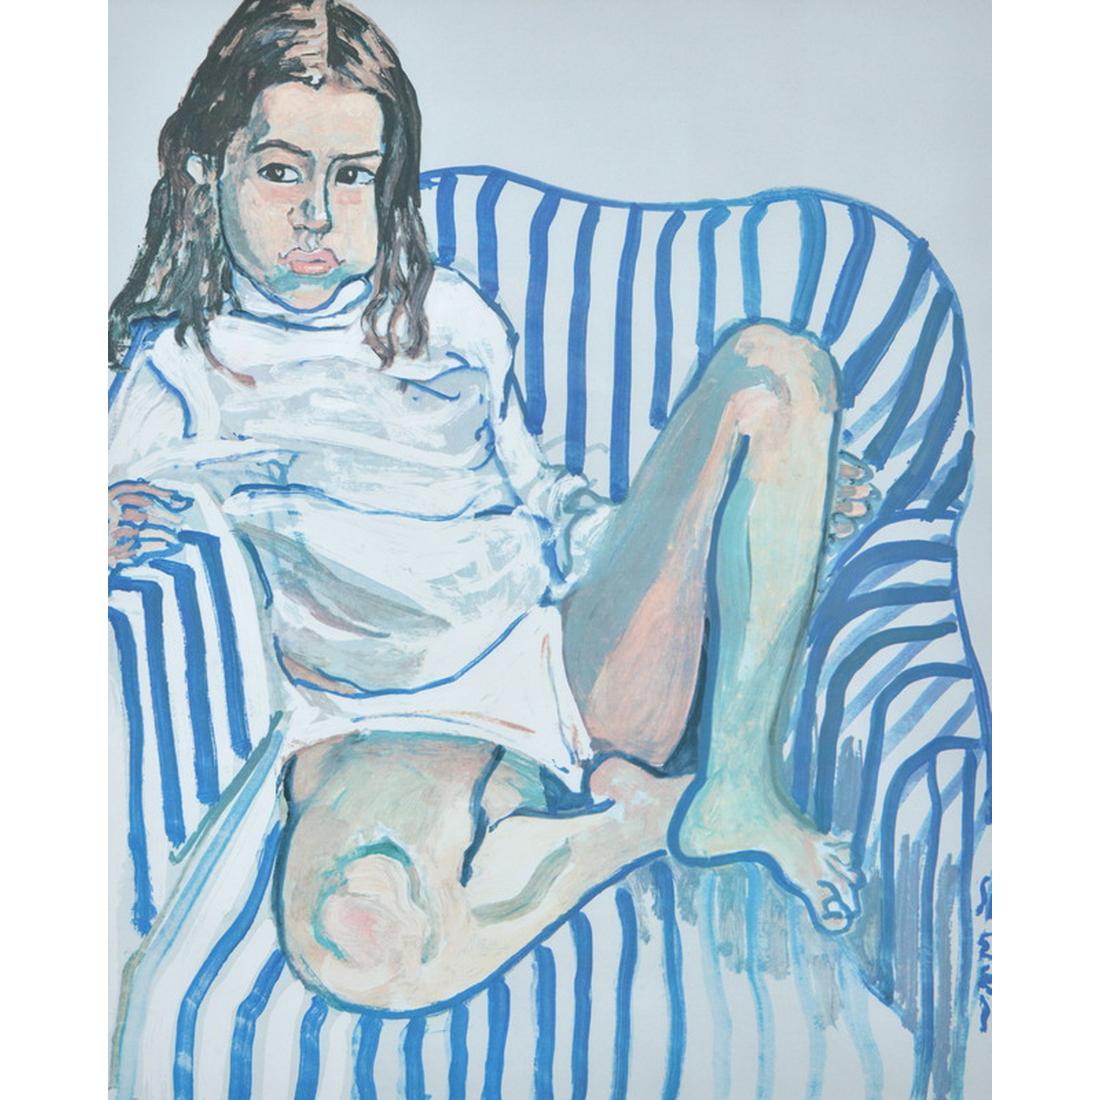 Künstler/Designer: Alice Neel (Amerikanerin, 1900-1984)

Zusätzliche Informationen: Der vollständige Titel des Werks lautet "Portrait eines Mädchens im blauen Stuhl".

Markierung(en); Anmerkungen: zweimal signiert (einmal in der Platte, einmal mit